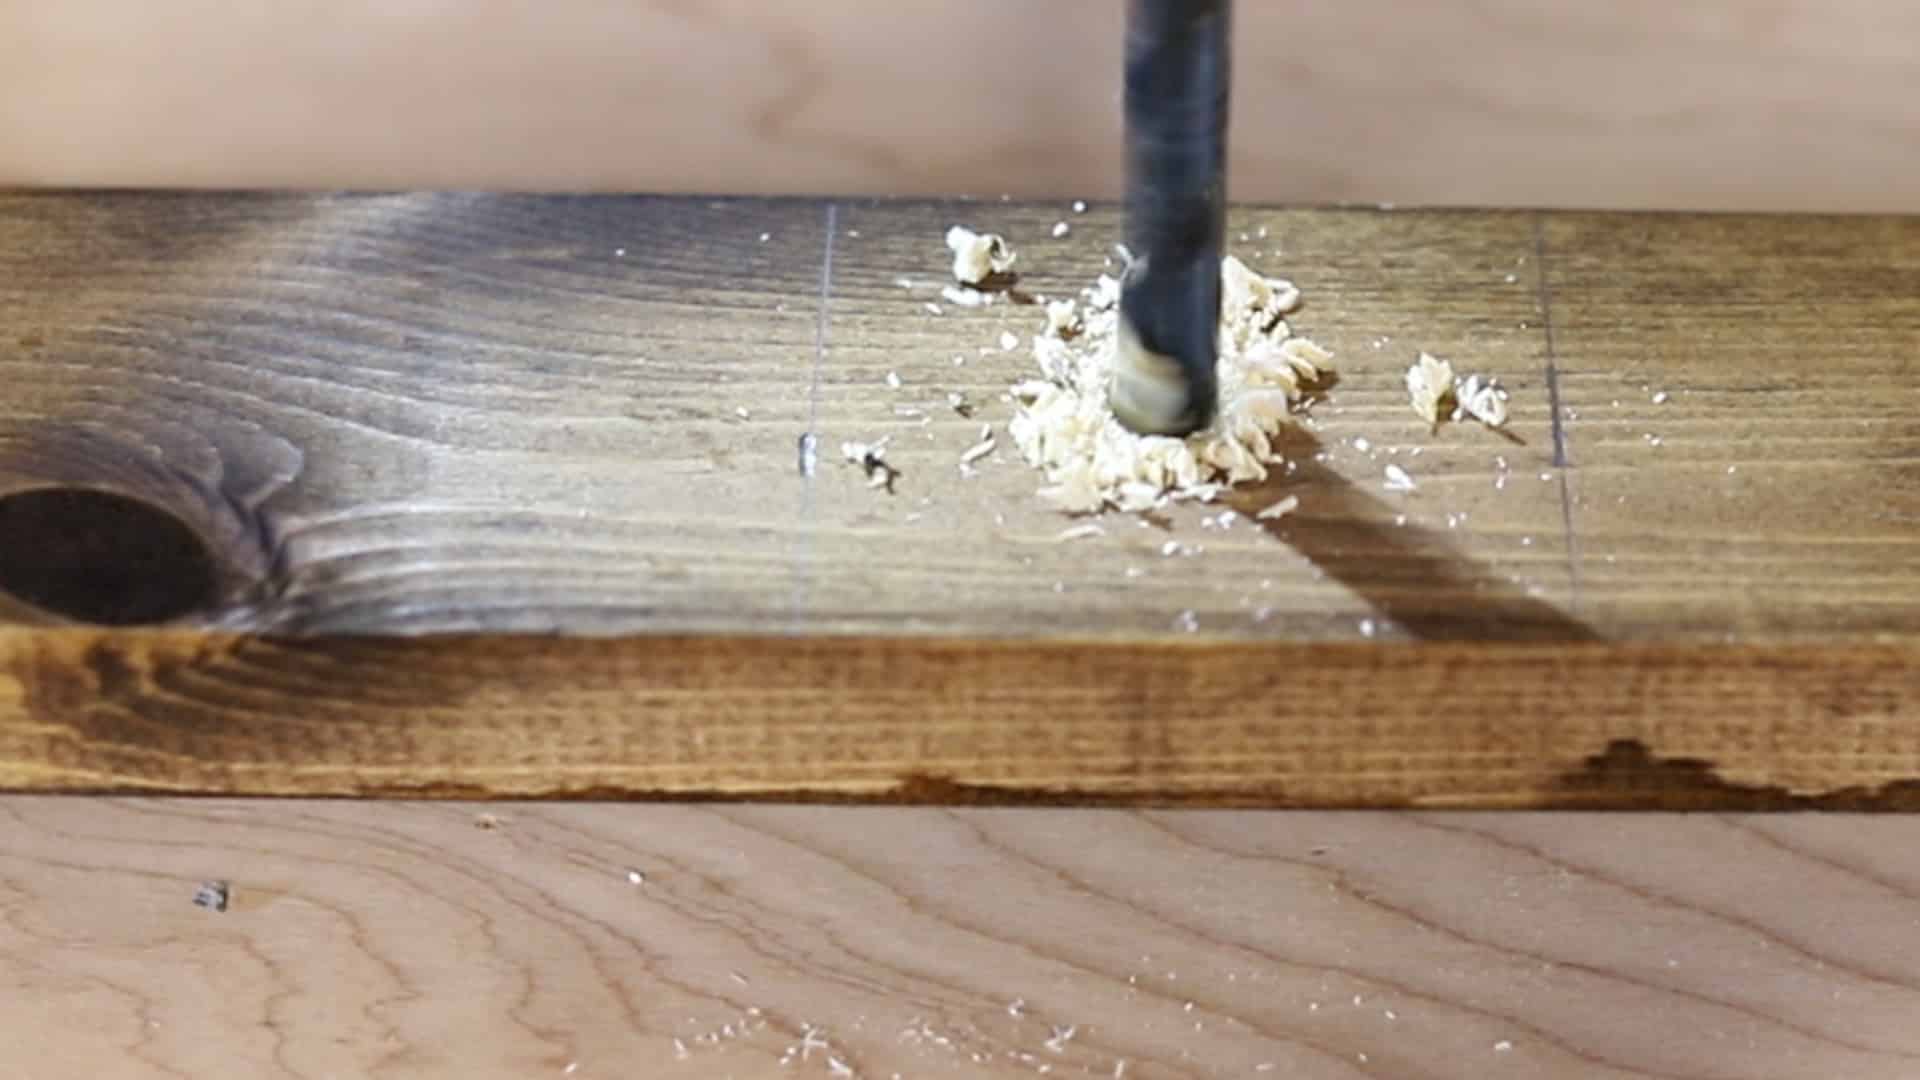 drilling holes to make a DIY blanket ladder